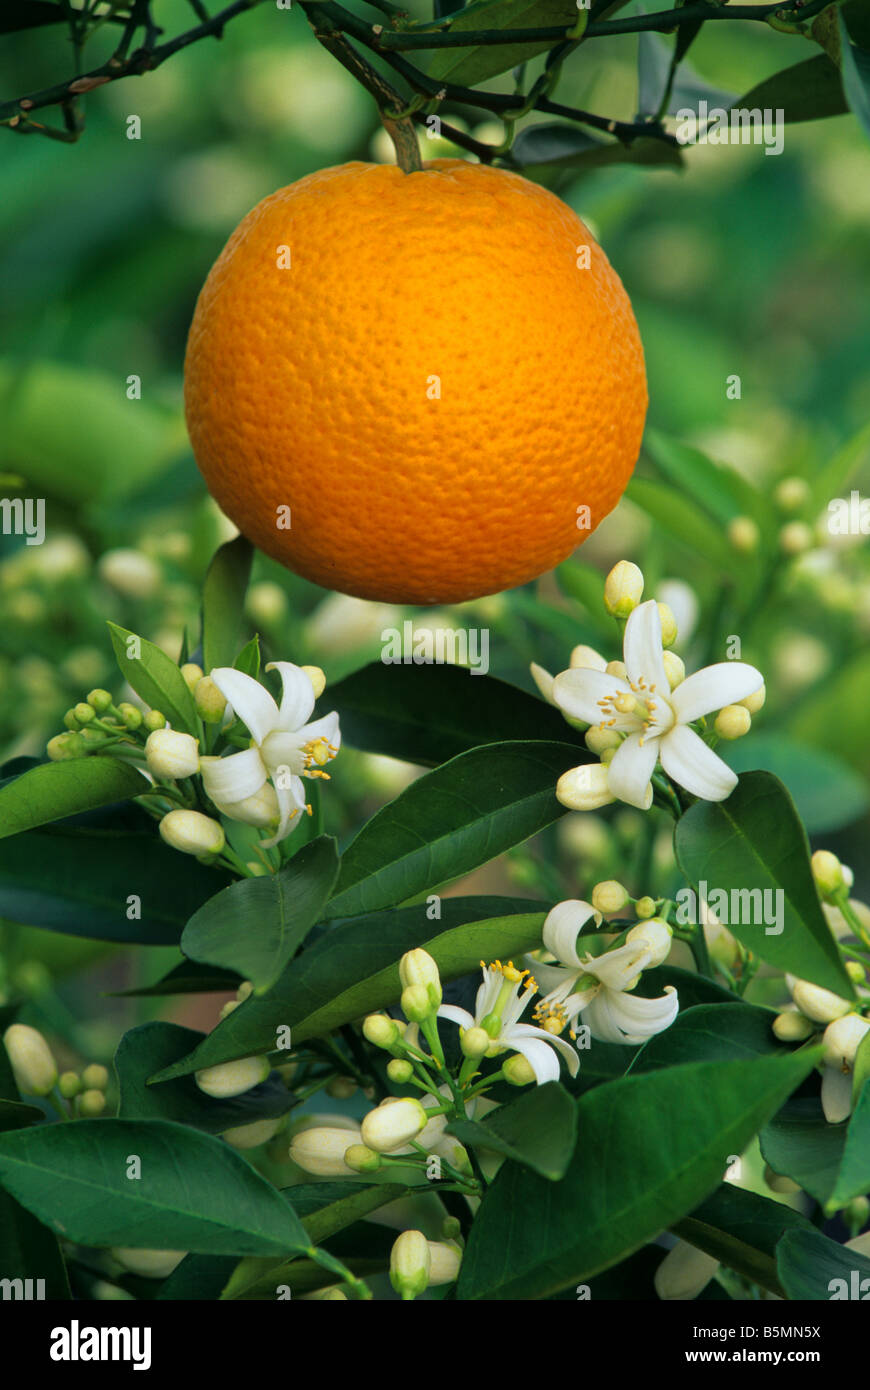 Valencia Orange und Blumen (Citrus sinensis) USA, von Richard Shiell / Dembinsky Foto Assoc Stockfoto